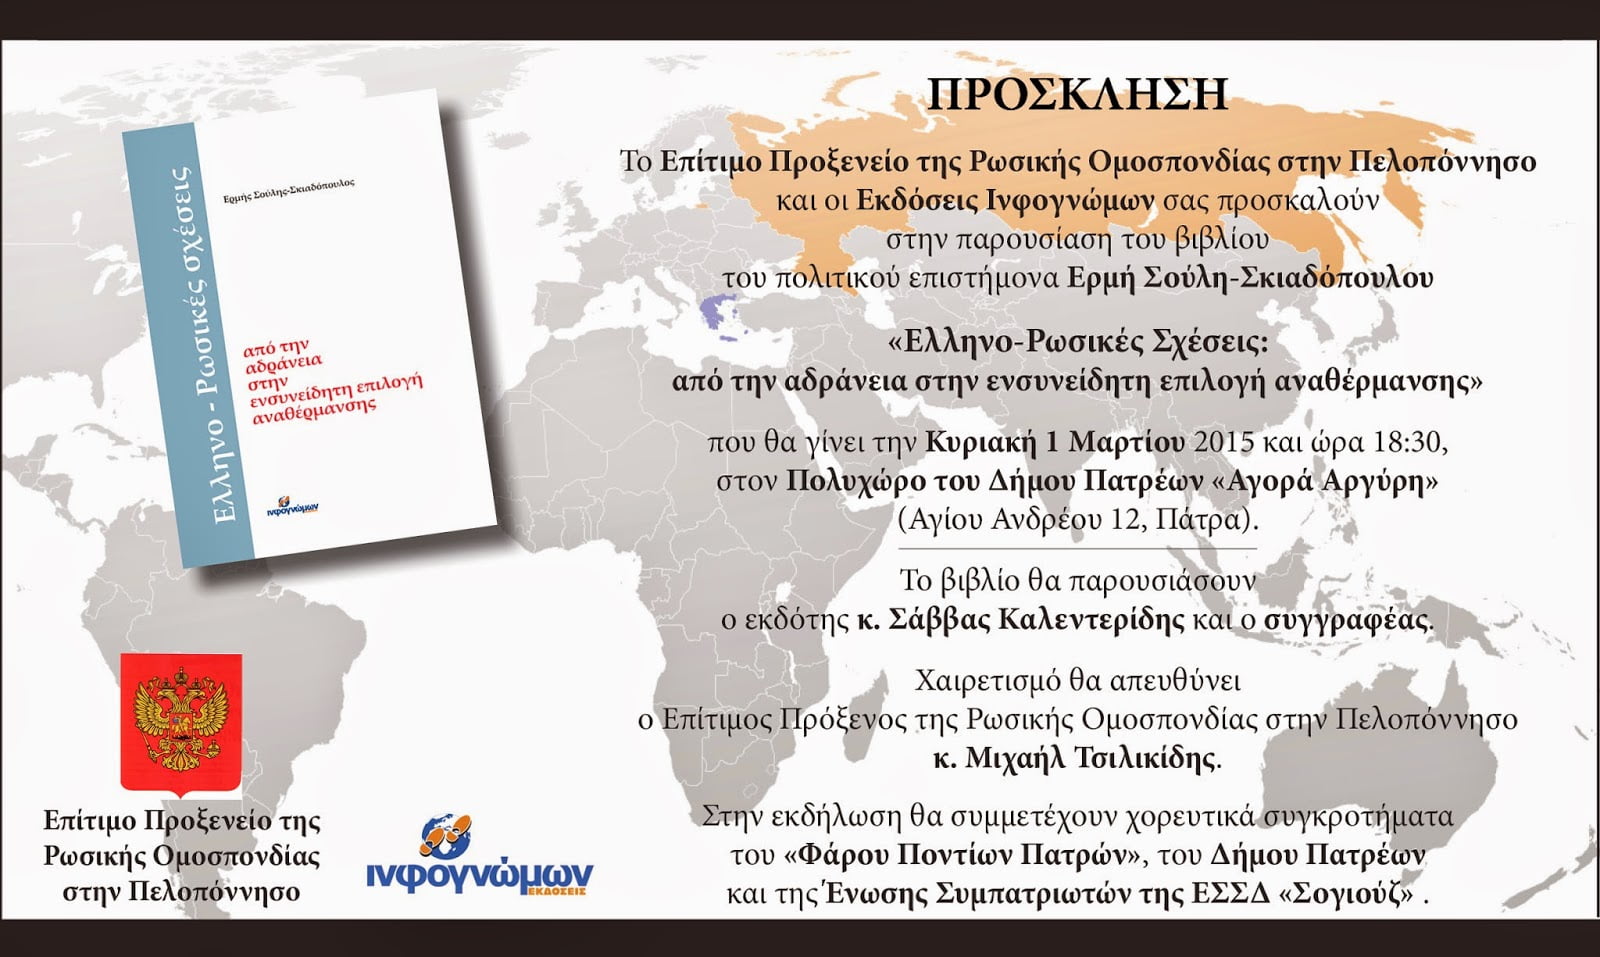 Παρουσίαση του  βιβλίου «Ελληνο-Ρωσικές Σχέσεις: από την αδράνεια στην ενσυνείδητη επιλογή αναθέρμανσης» στην Πάτρα